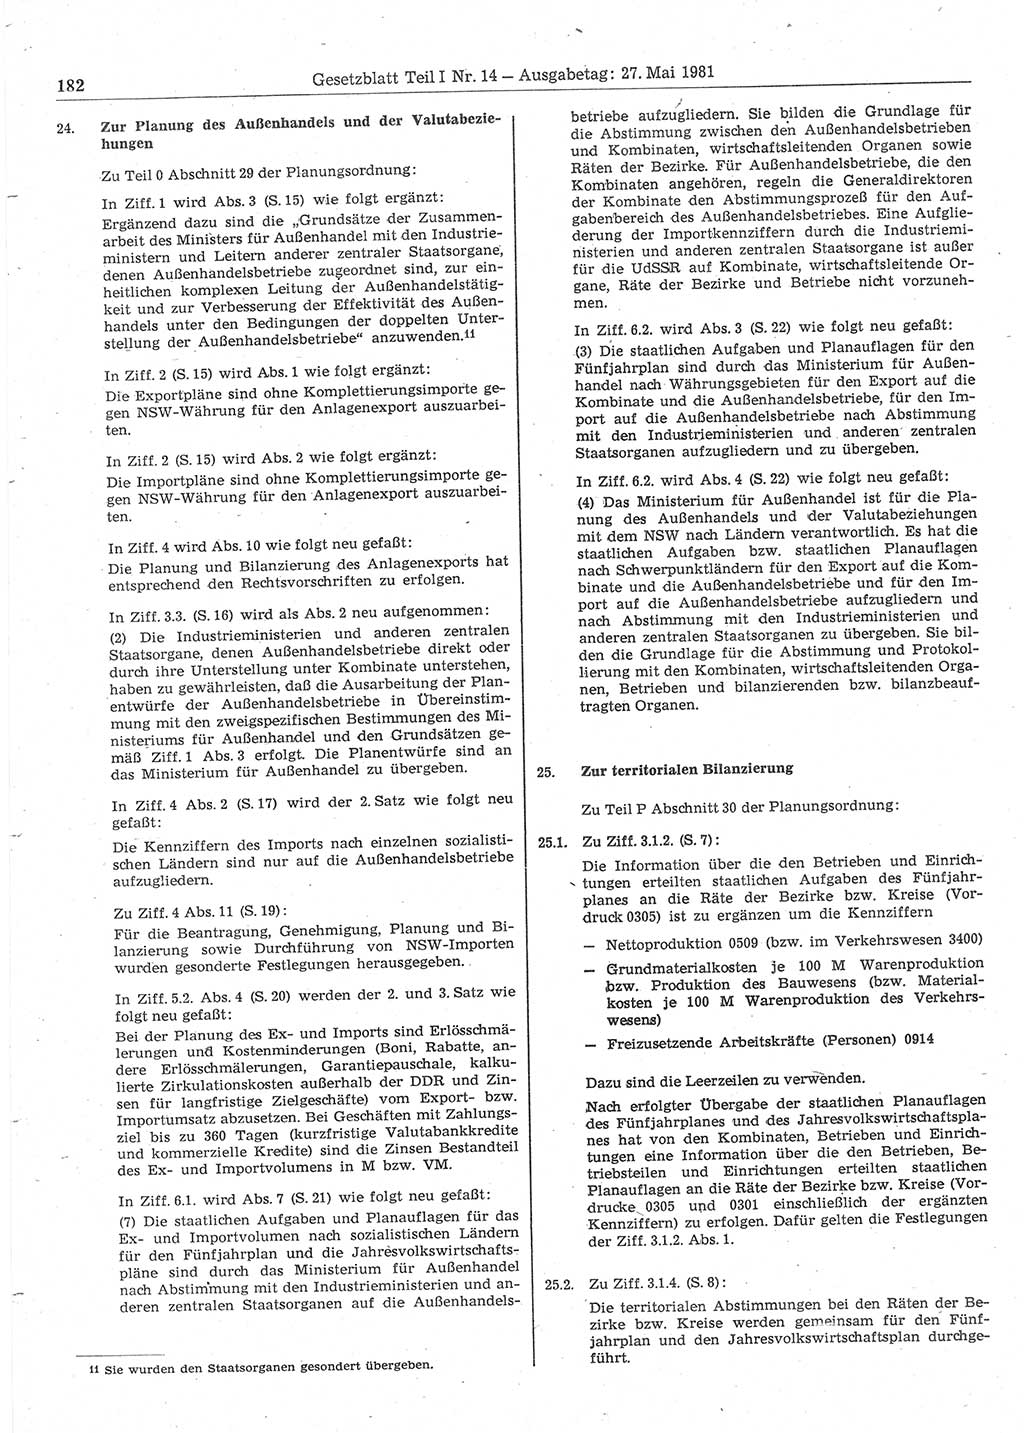 Gesetzblatt (GBl.) der Deutschen Demokratischen Republik (DDR) Teil Ⅰ 1981, Seite 182 (GBl. DDR Ⅰ 1981, S. 182)